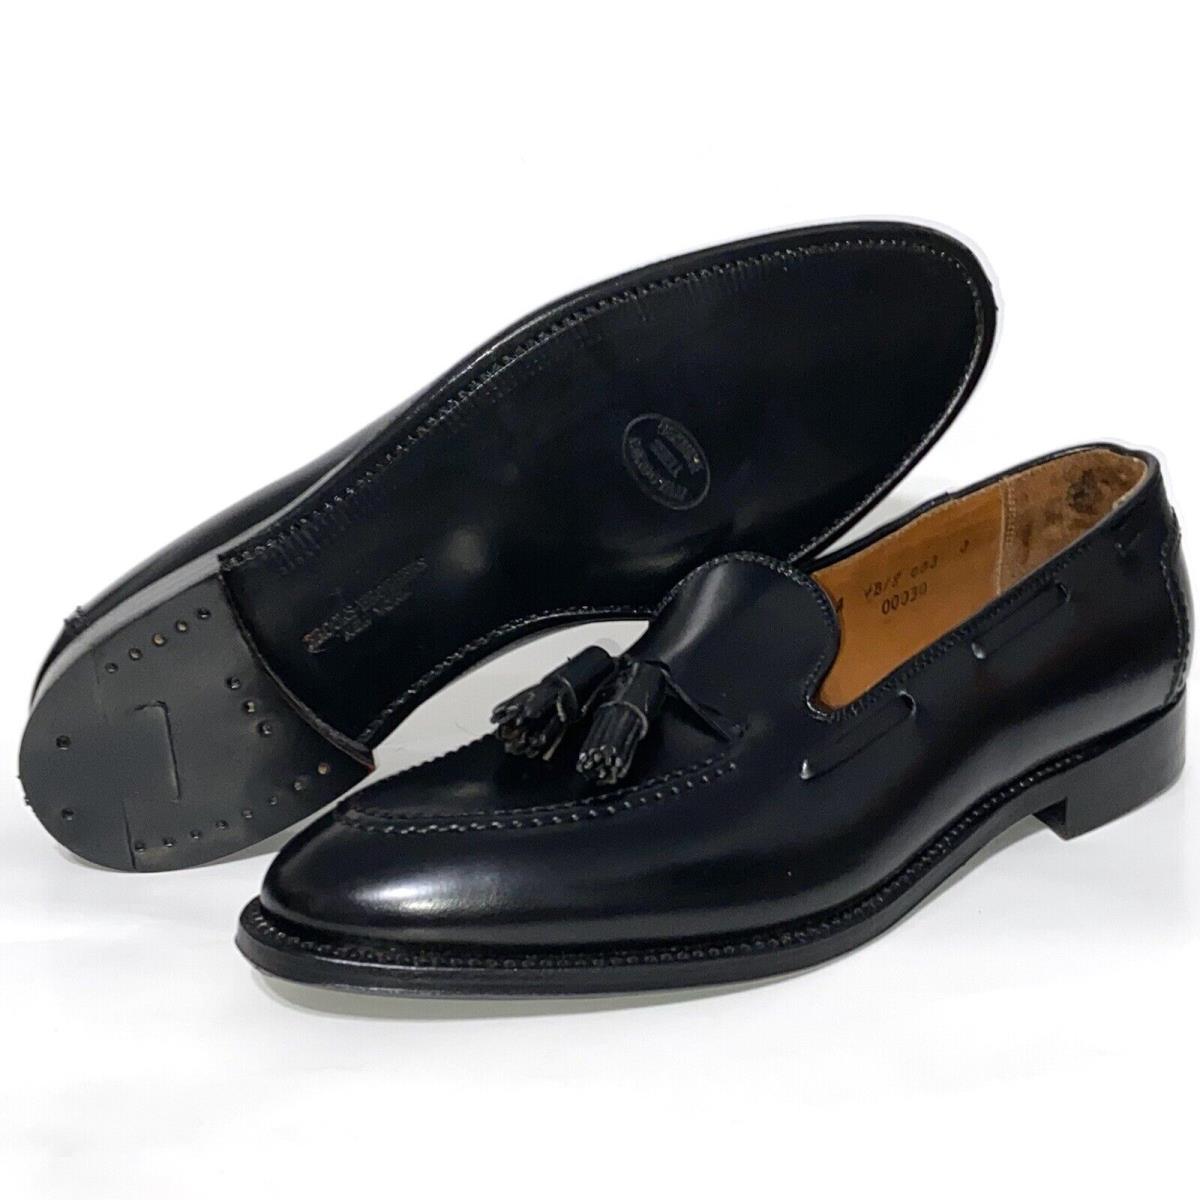 Brooks Brothers Alden Leather Tassel Loafers Cordovan Dress Shoes Black Men 13